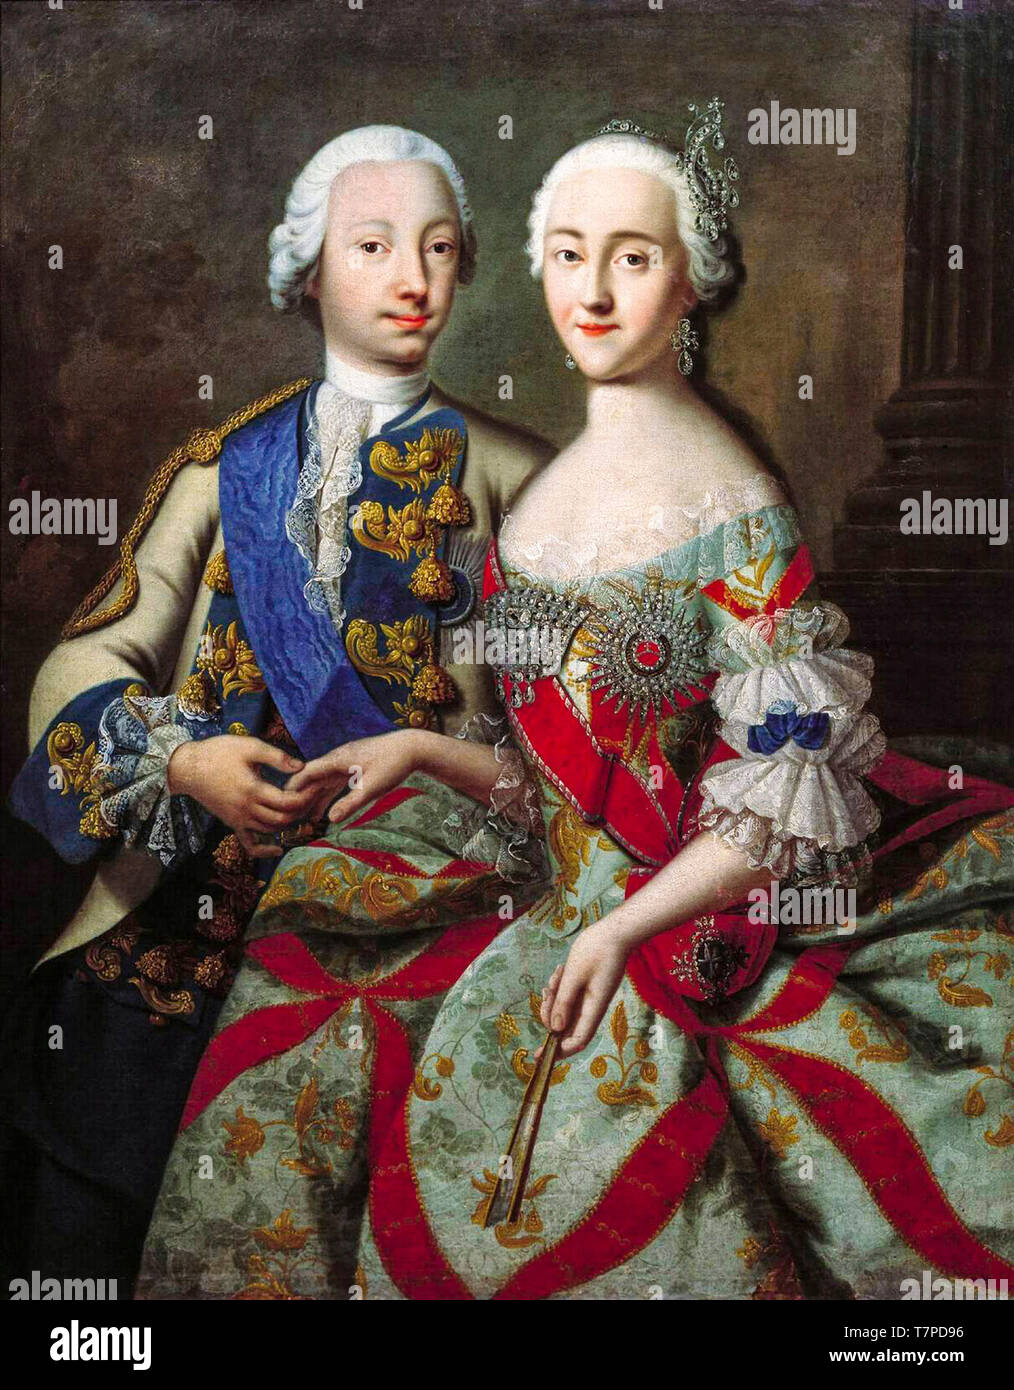 Portrait von Großherzog Peter Fedorovich (zukünftige Peter III) und seine Frau Großfürstin Katharina Alexeevna (zukünftige Katharina II.), Gemälde von Georg Christoph Grooth, C. 1745 Stockfoto